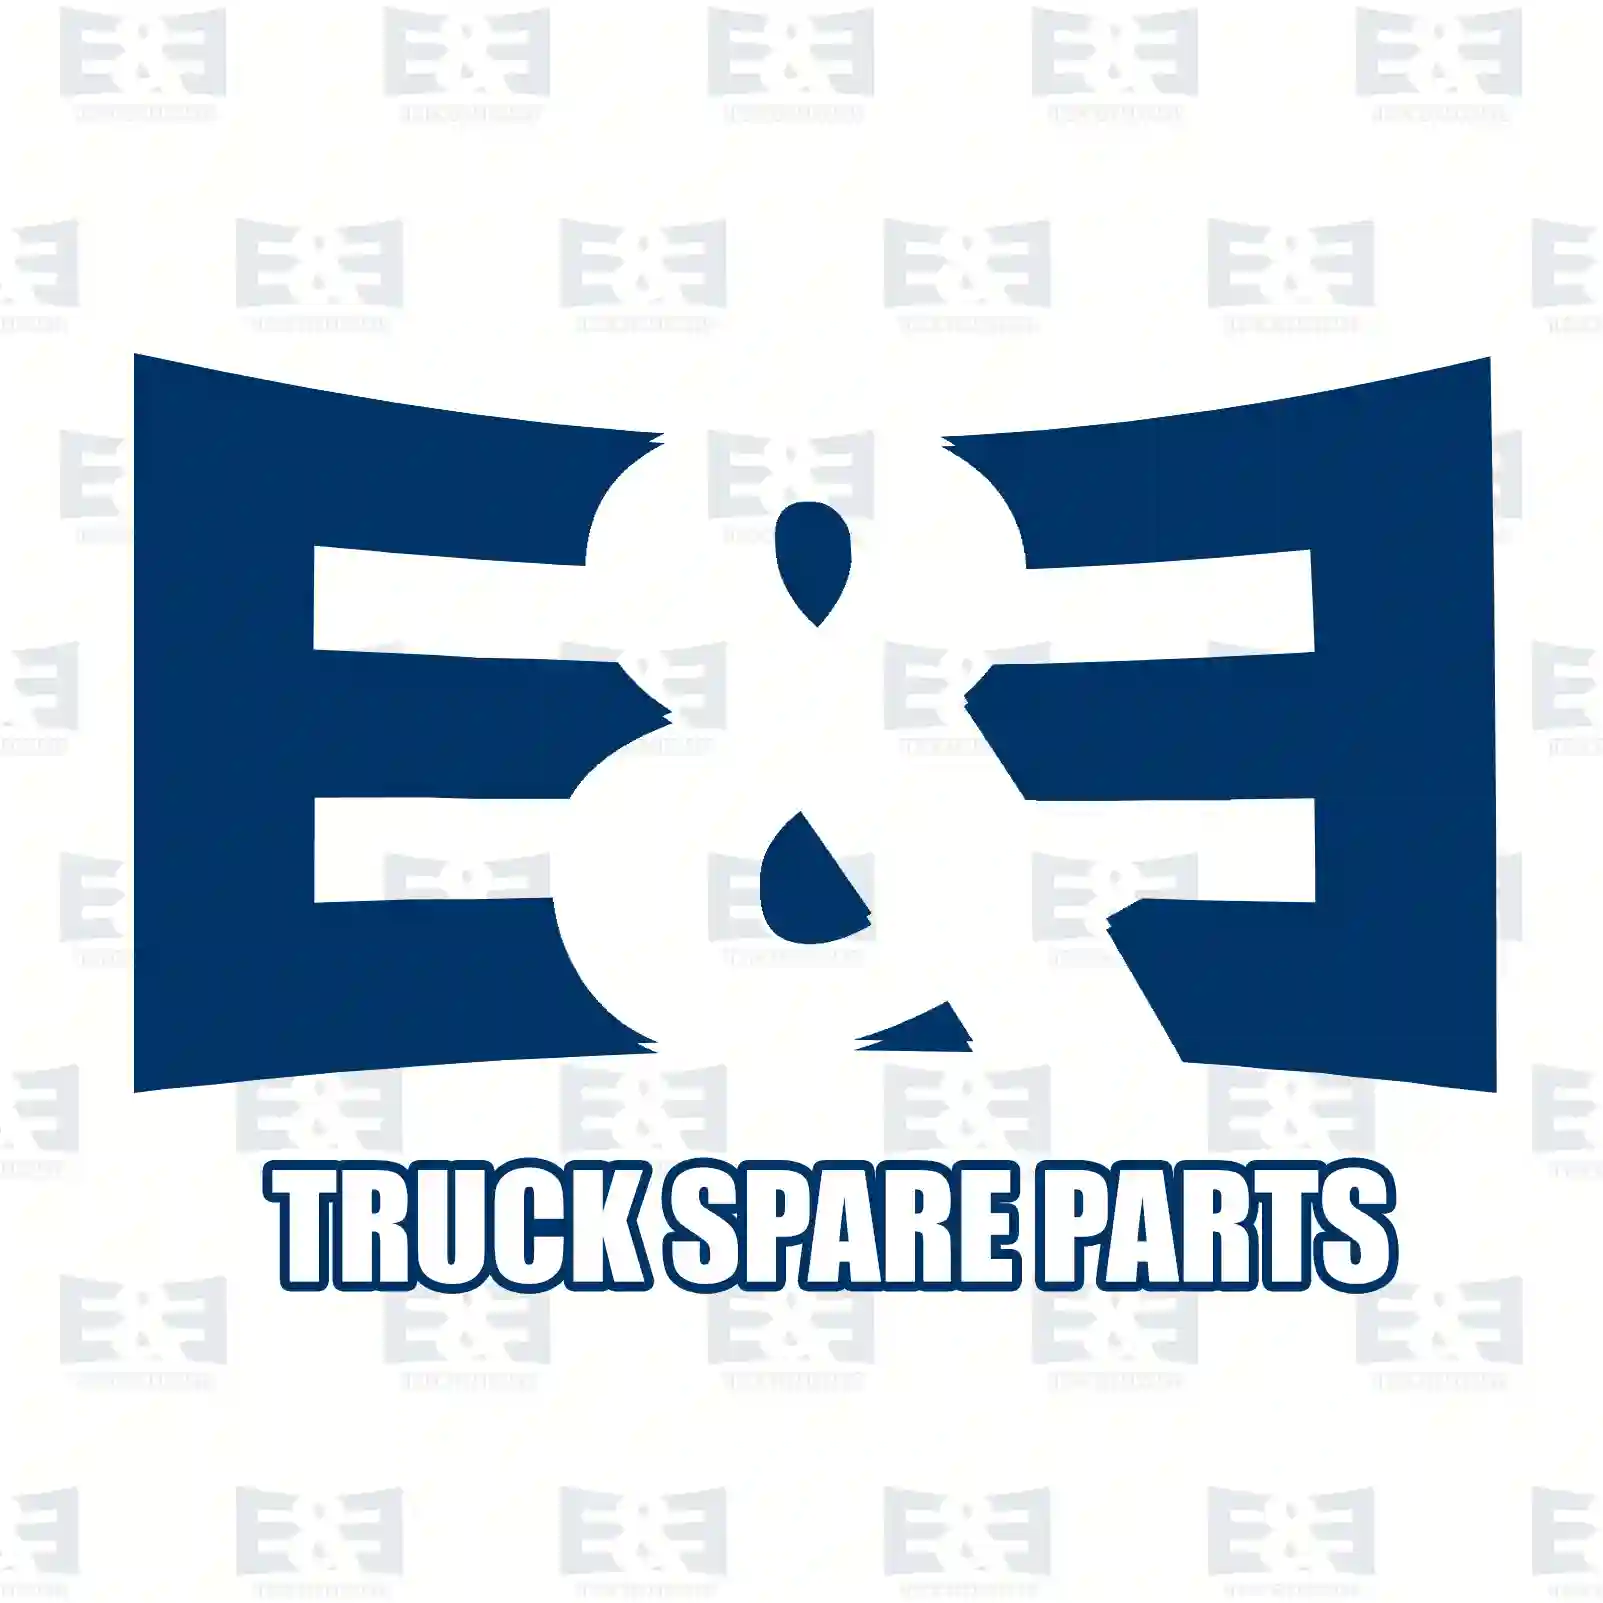 Overhaul kit, 2E2209056, 85103633 ||  2E2209056 E&E Truck Spare Parts | Truck Spare Parts, Auotomotive Spare Parts Overhaul kit, 2E2209056, 85103633 ||  2E2209056 E&E Truck Spare Parts | Truck Spare Parts, Auotomotive Spare Parts